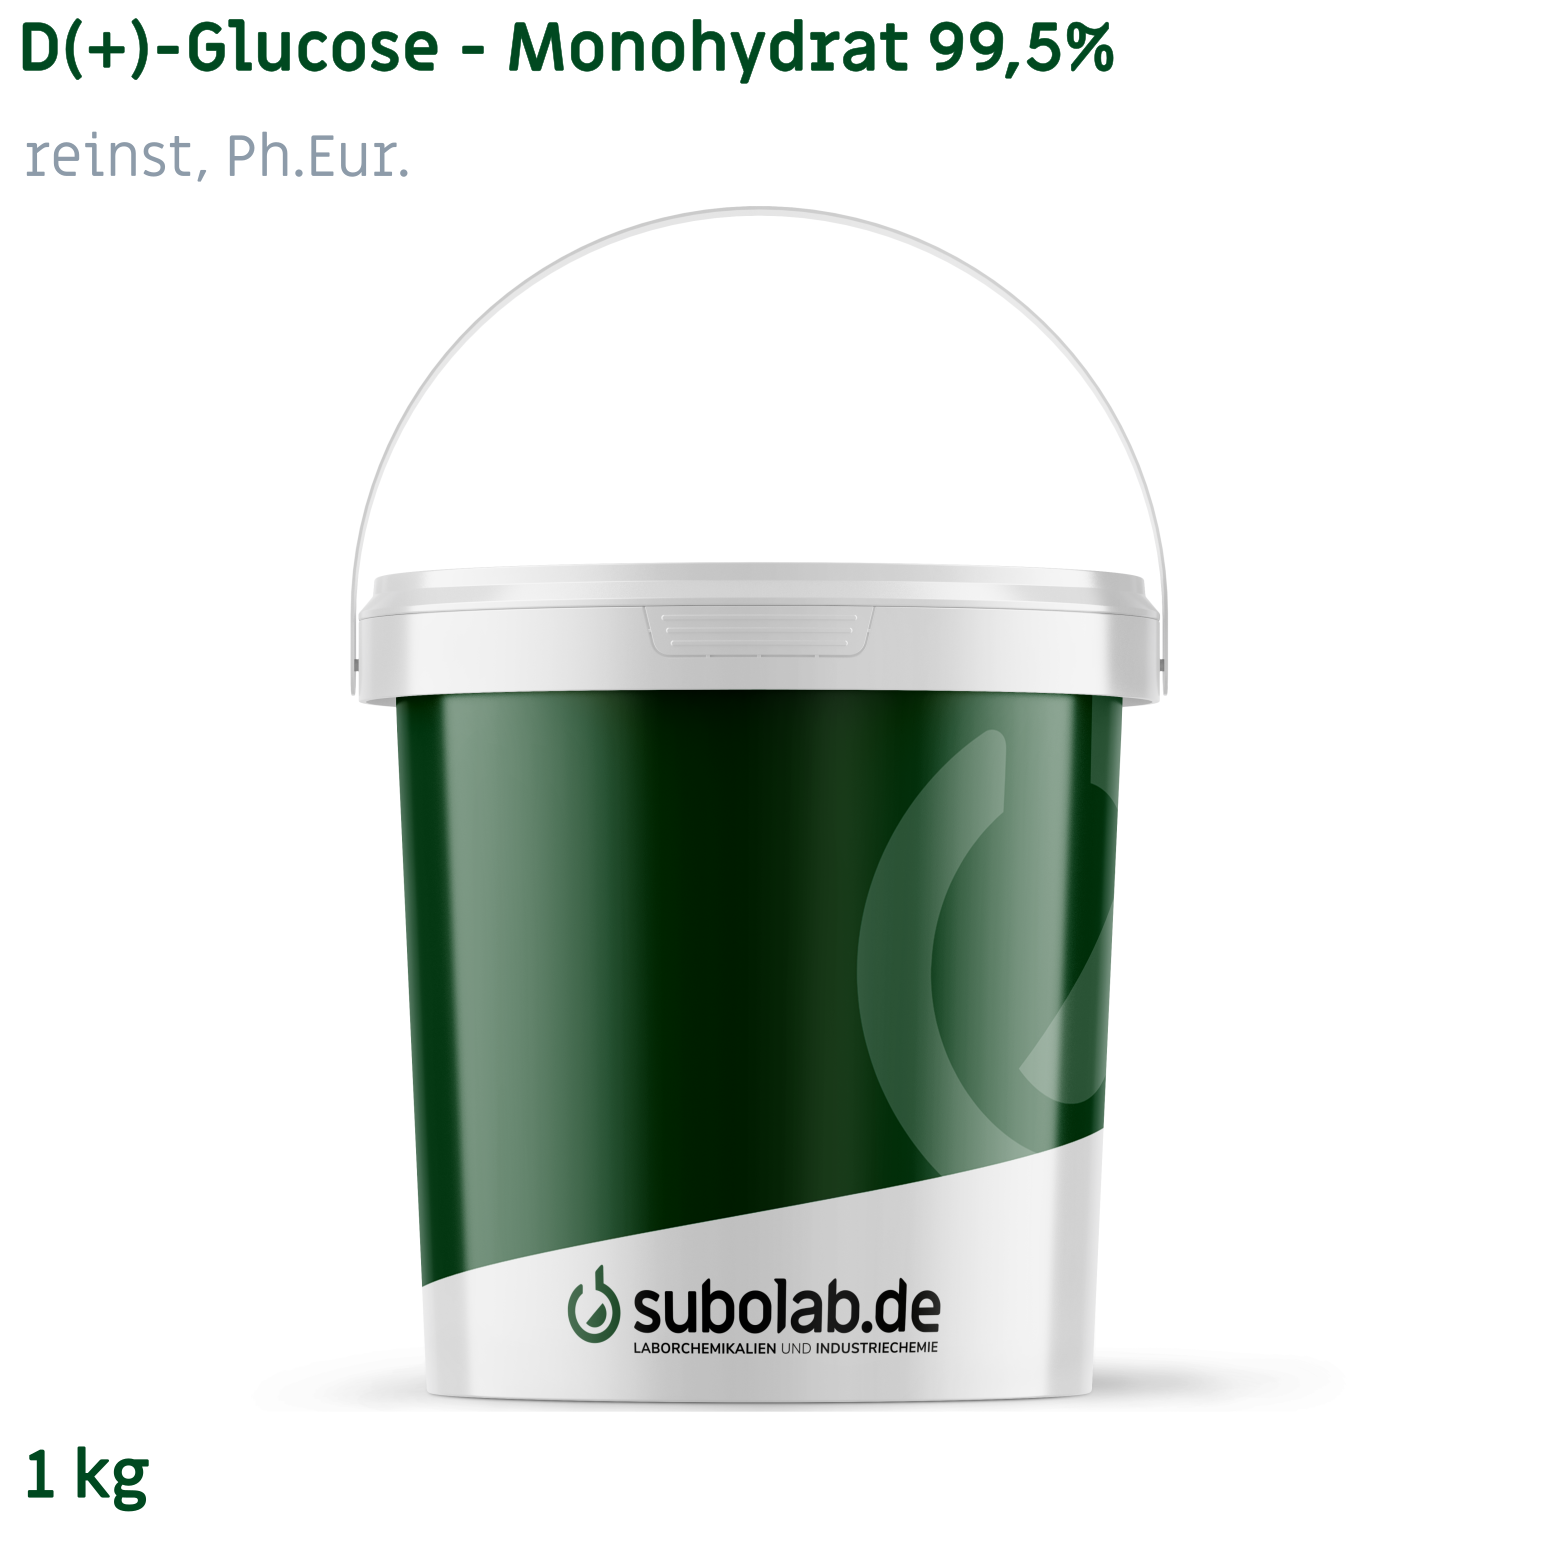 Bild von D(+)-Glucose - Monohydrat 99,5% reinst, Ph.Eur. (1 kg)